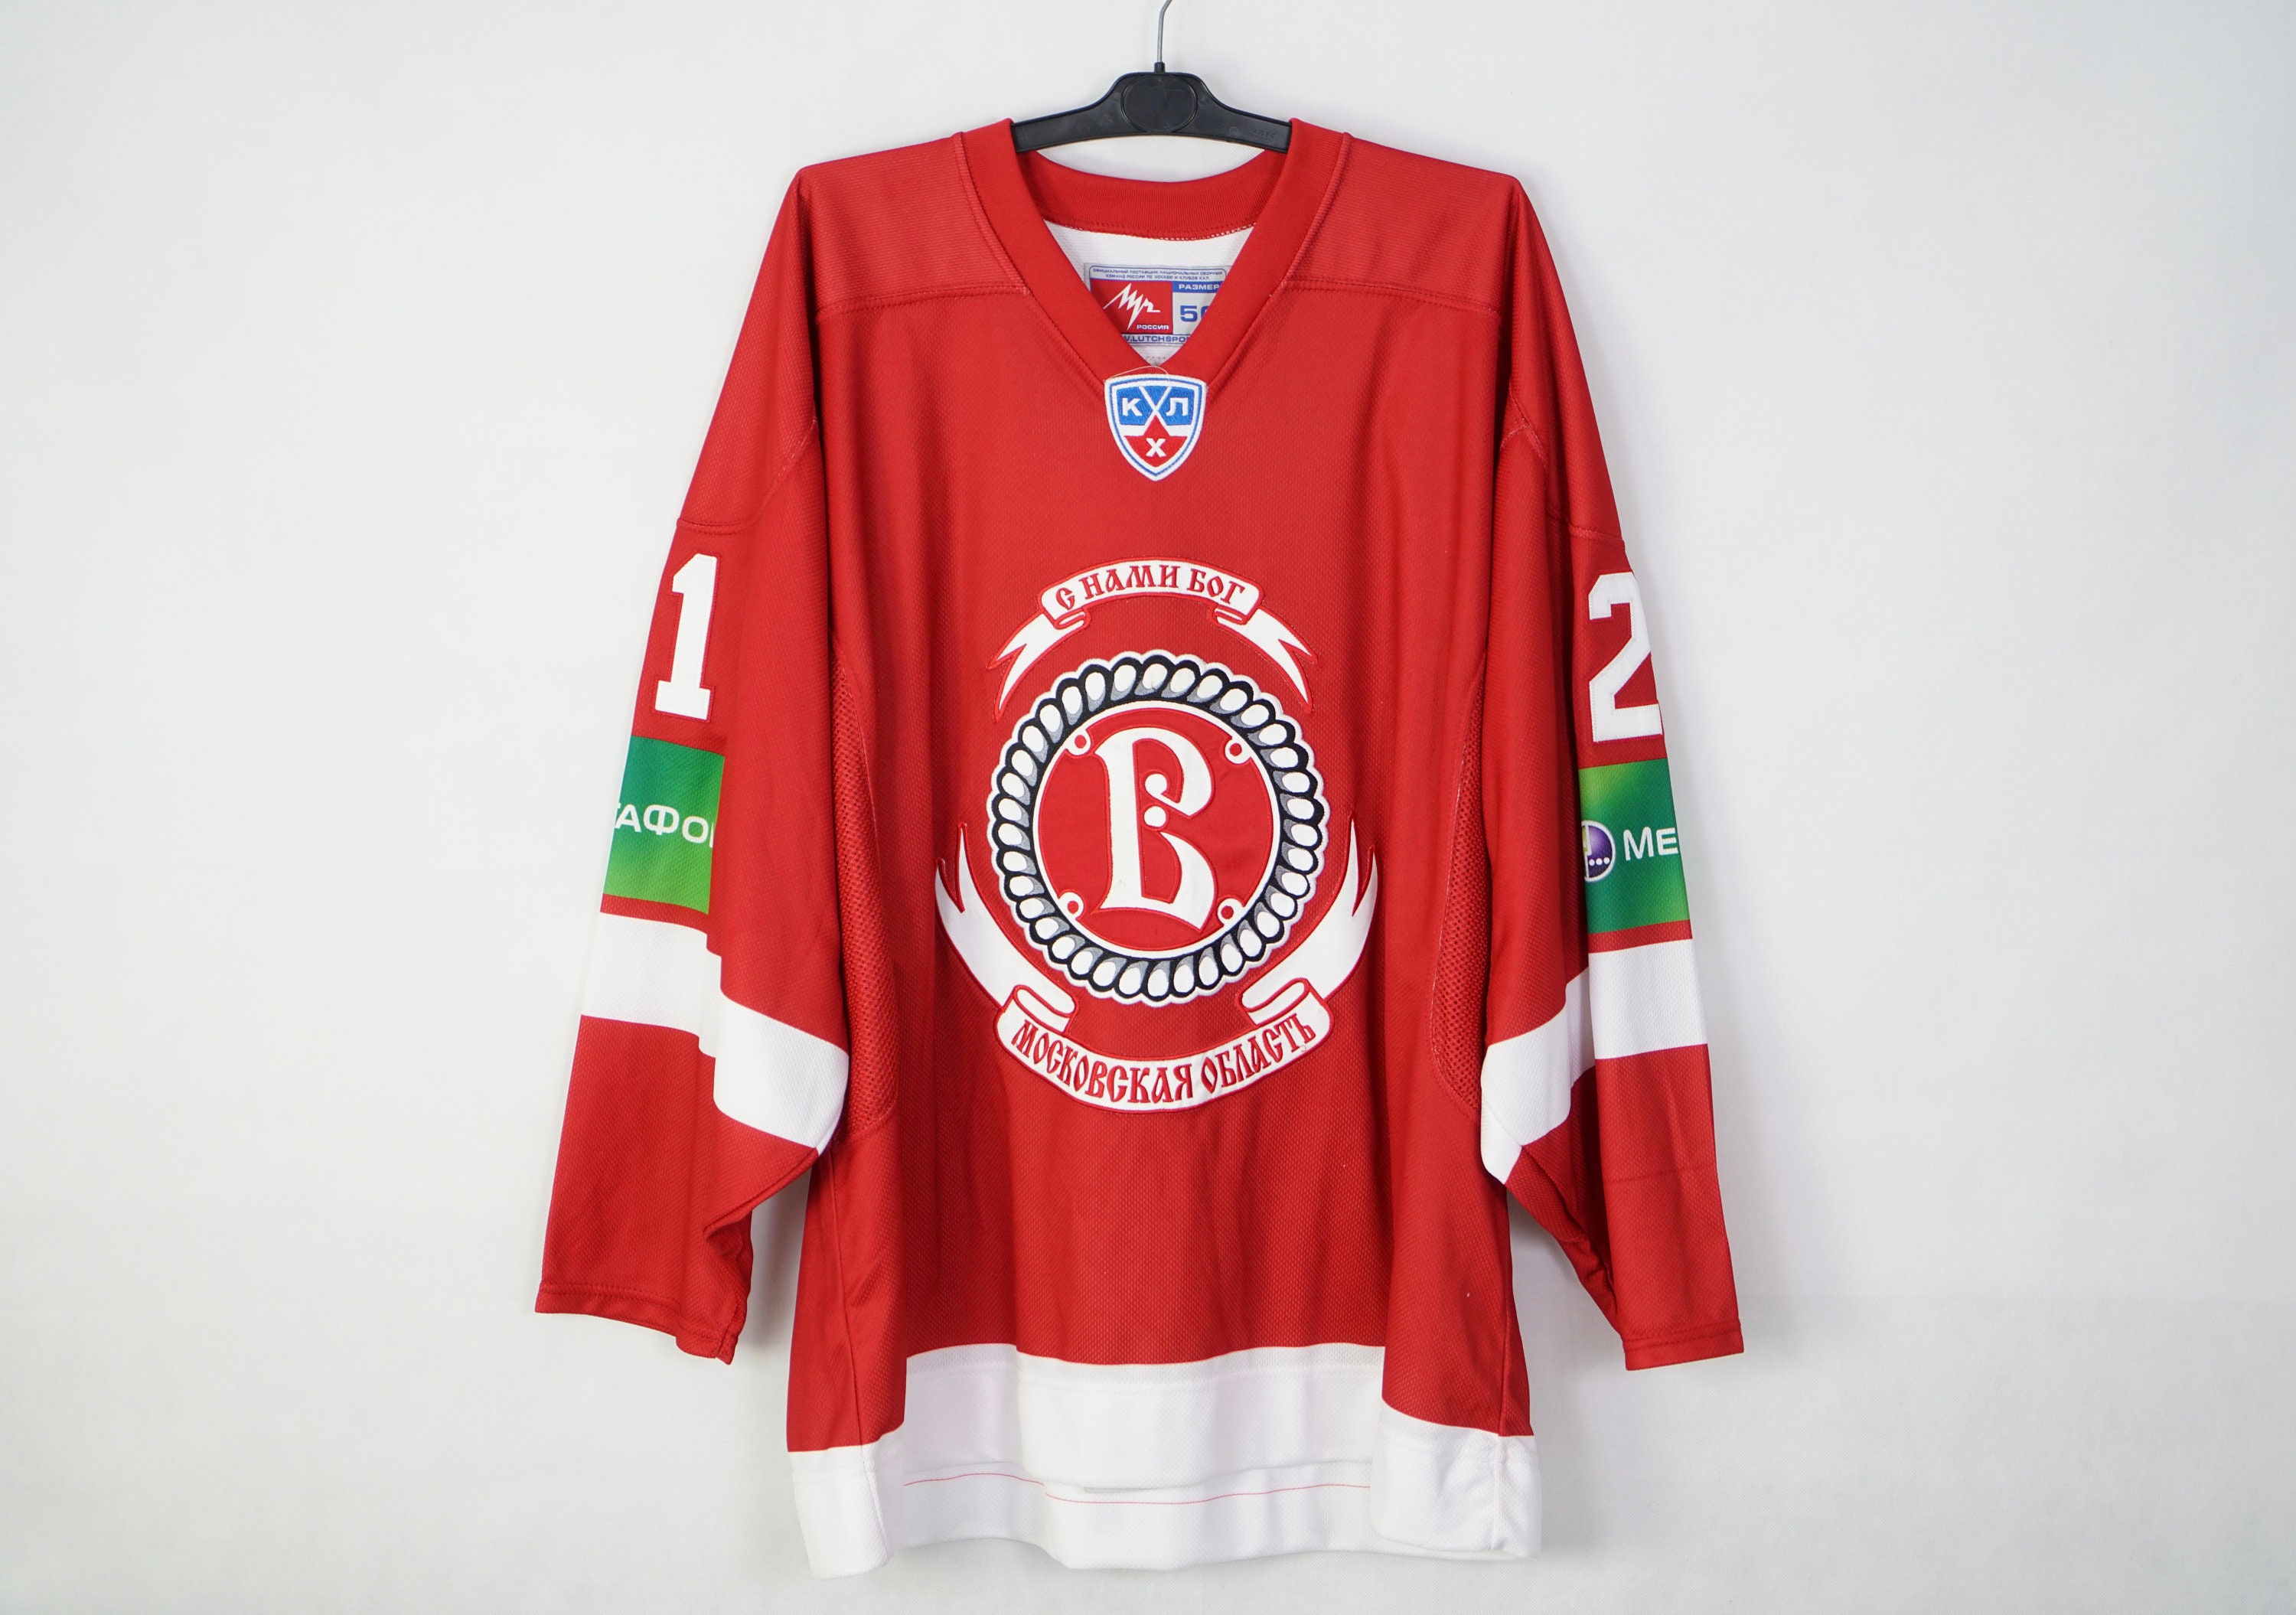 KHL FAN SHOP - hockey fan gear, apparel and souvenirs online store